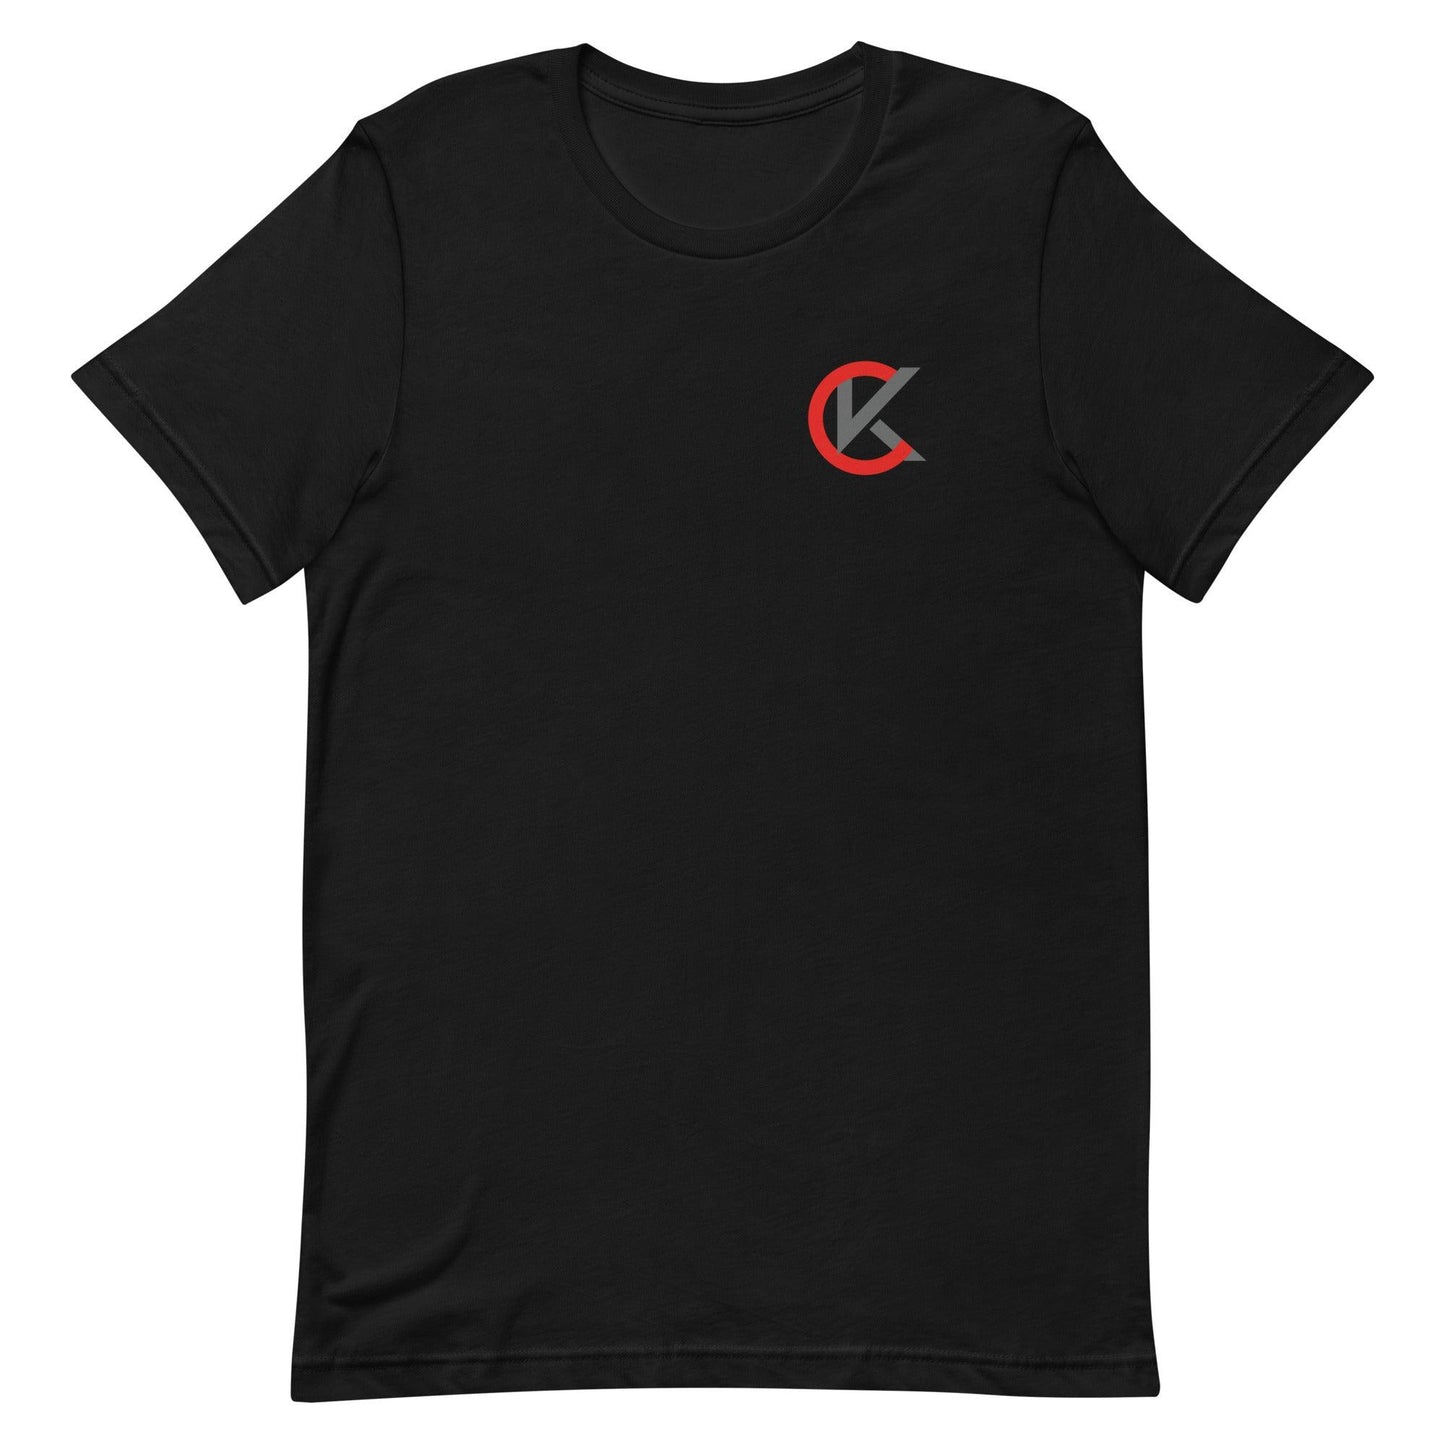 Cooper Kinney "Elite" t-shirt - Fan Arch